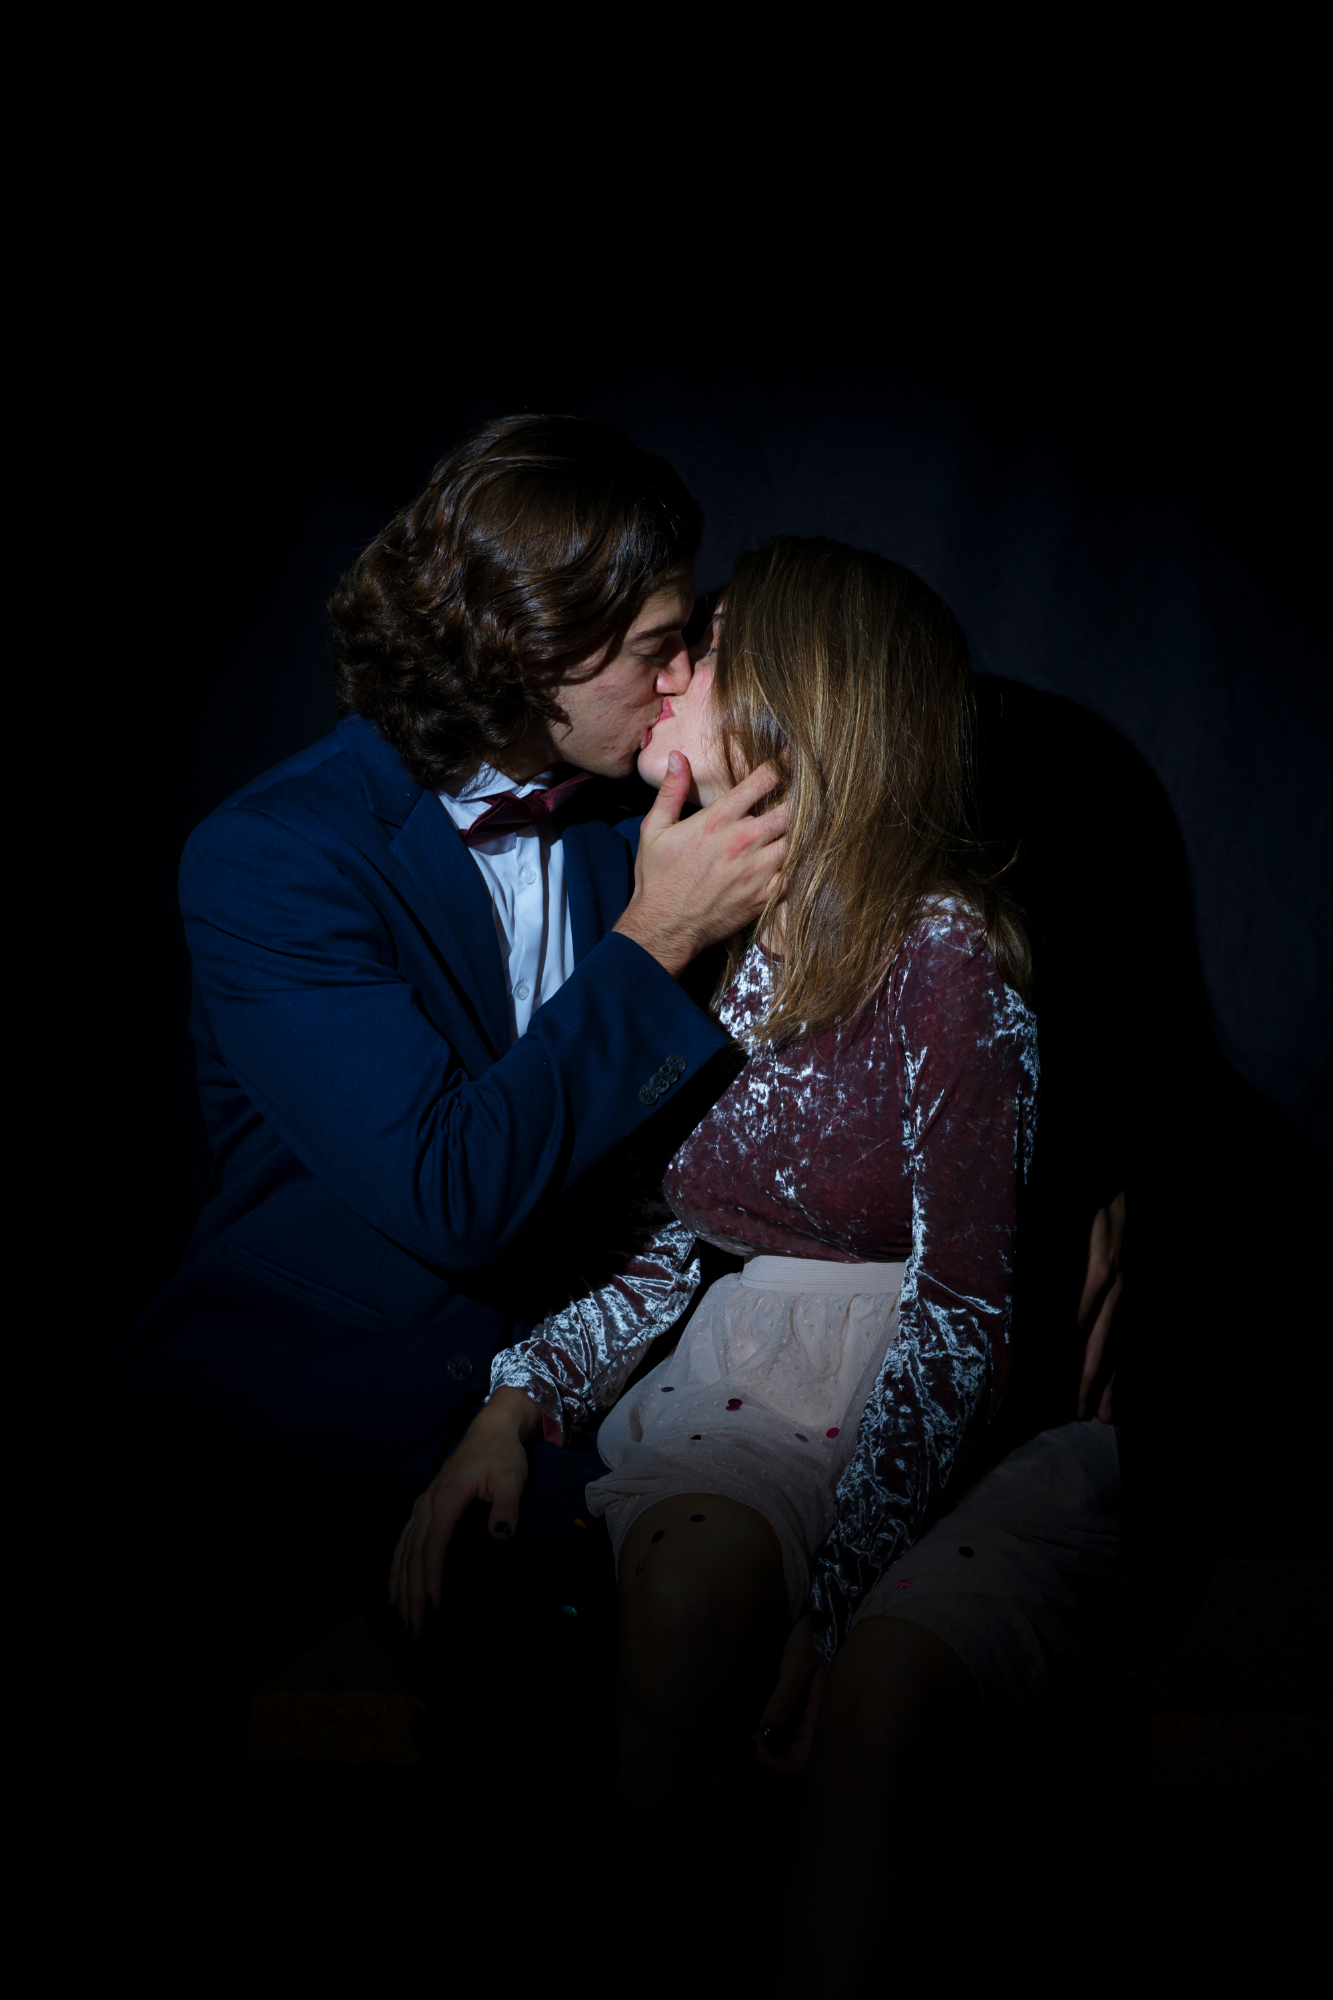 Un homme et une femme qui s'embrassent passionnément | Source : Freepik